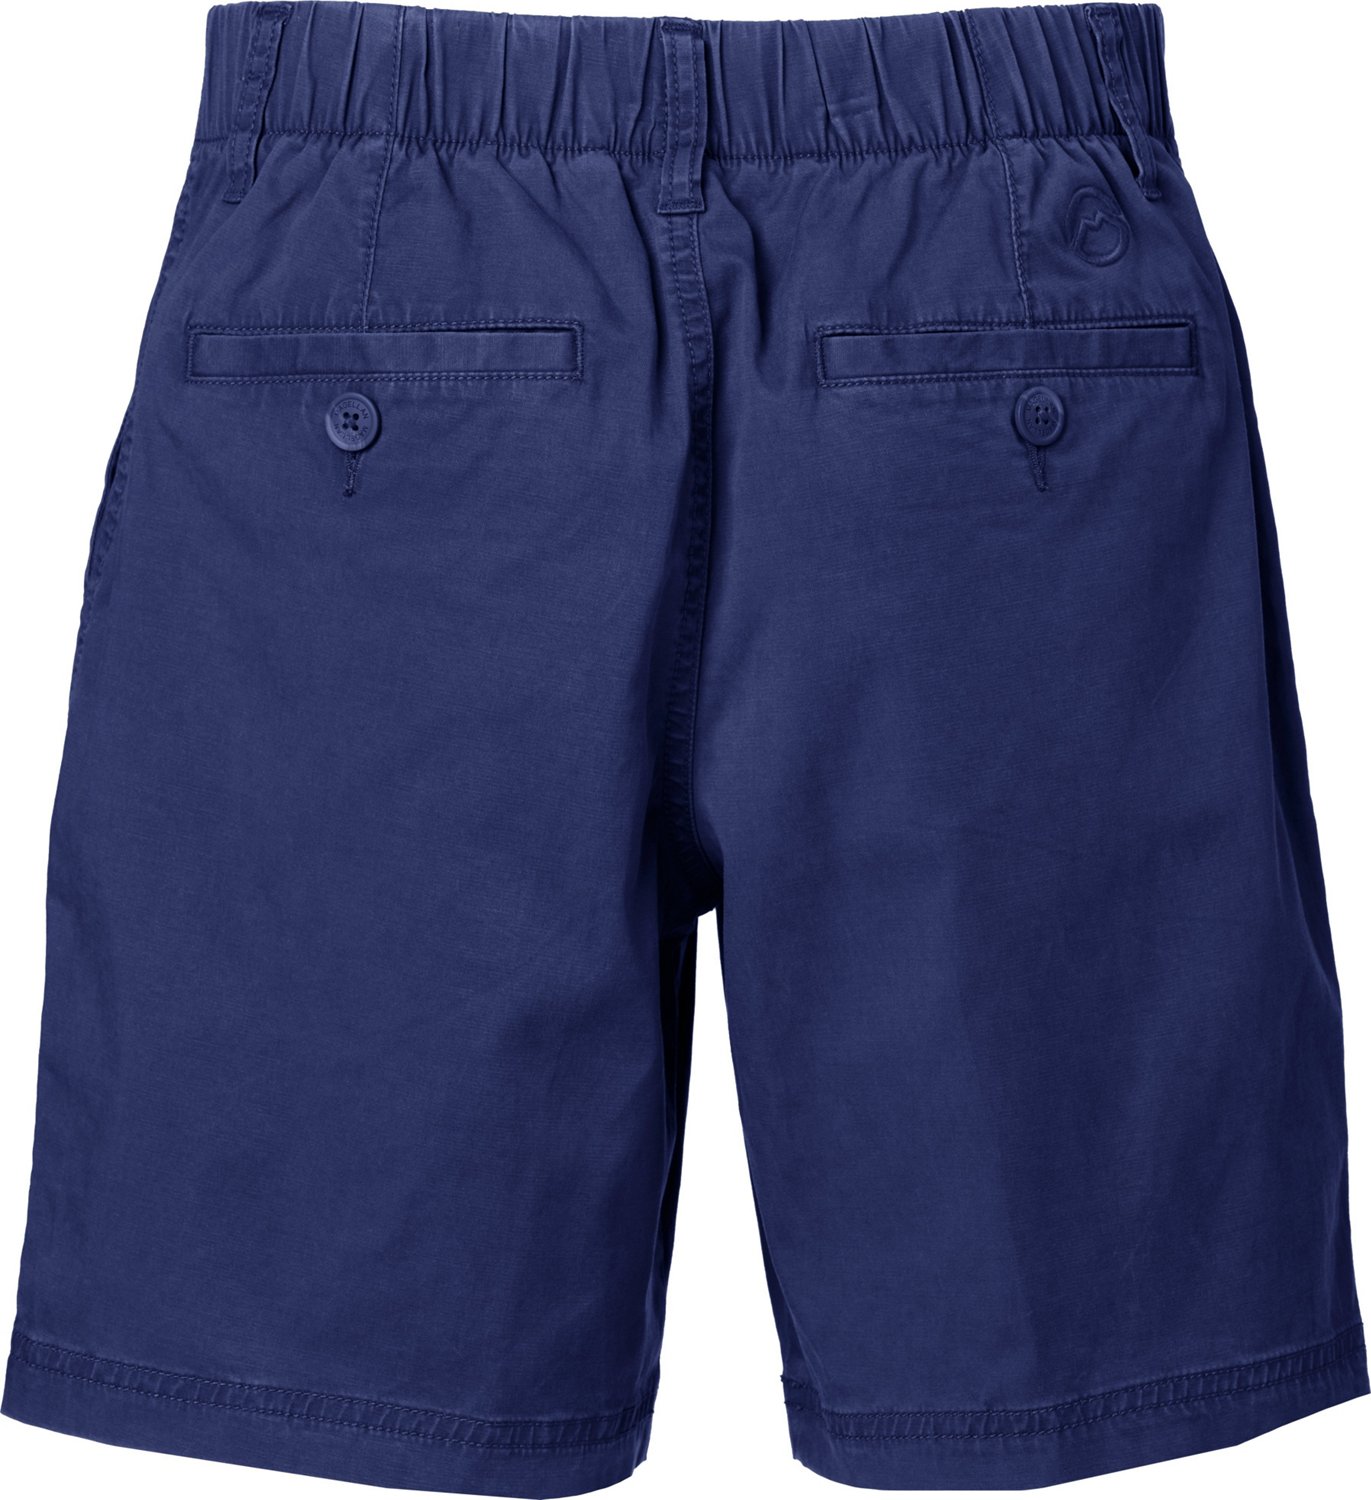 Magellan Outdoors Women's Shorts Fishing Gear Size 1X Blue